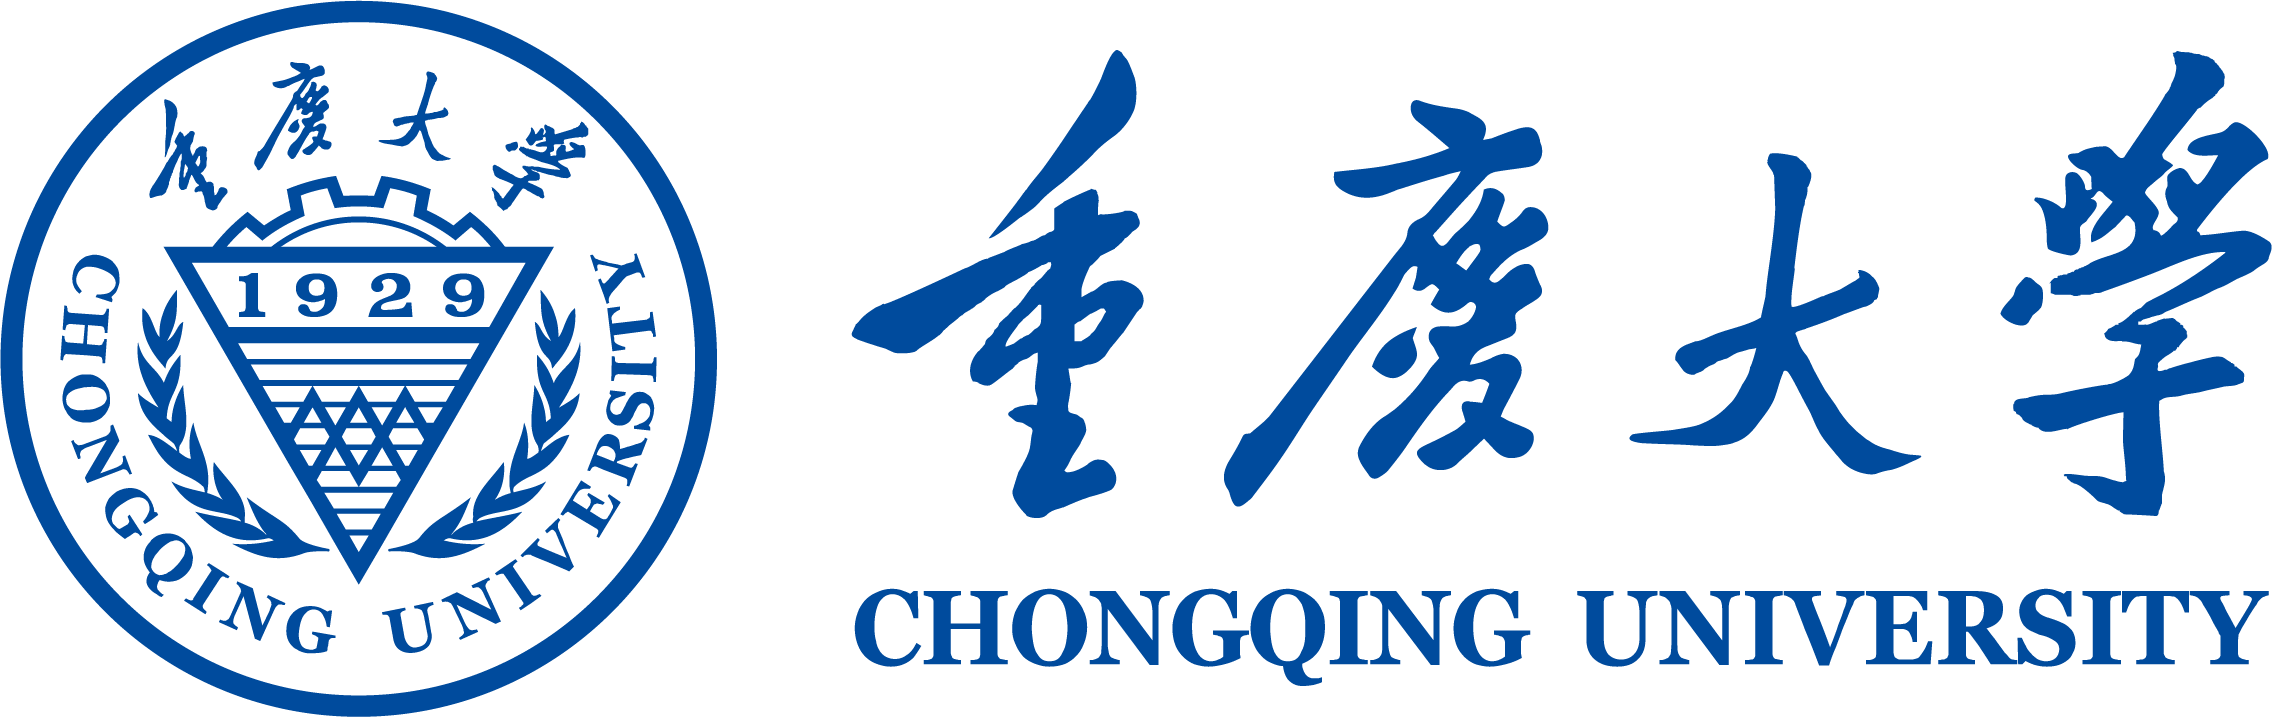 重庆大学 透明logo 2272-717.png